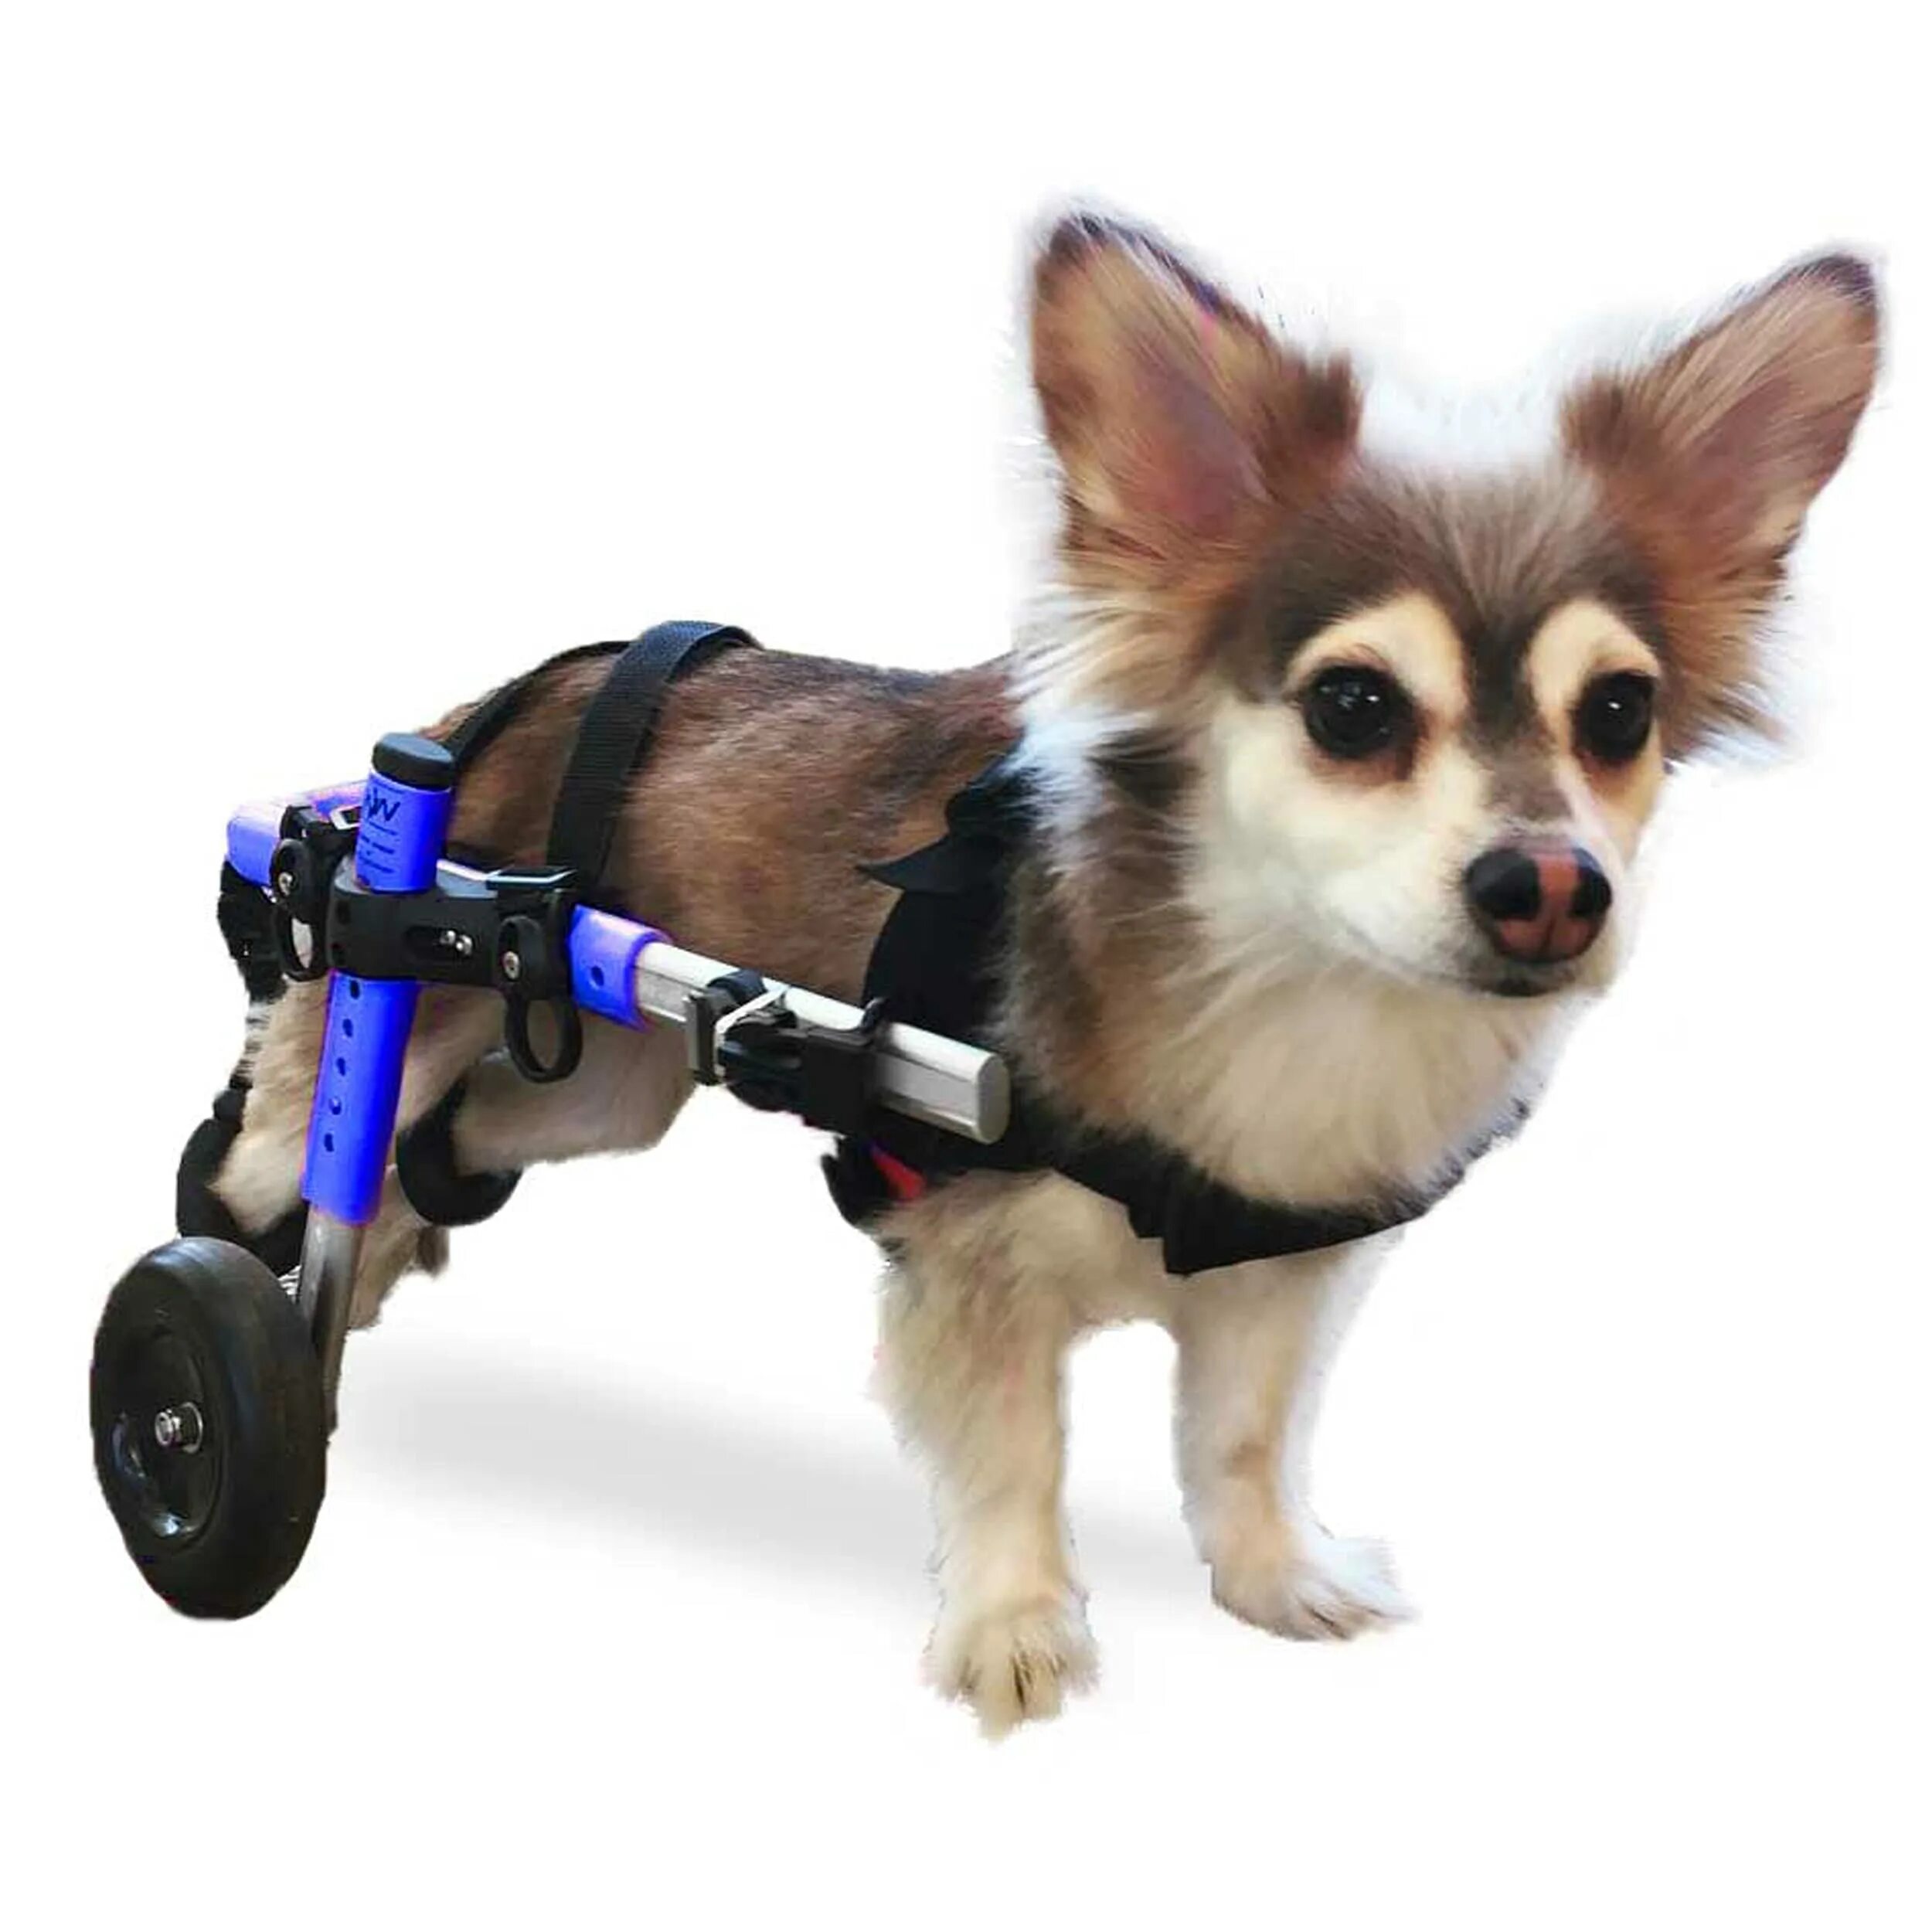 Коляска для собак на задние лапы. Инвалидная коляска для собак Walkin Wheels. Инвалидные коляски Dog wheelchairs. Коляска для собак Walkin' Wheels. Каталки для собак инвалидов.